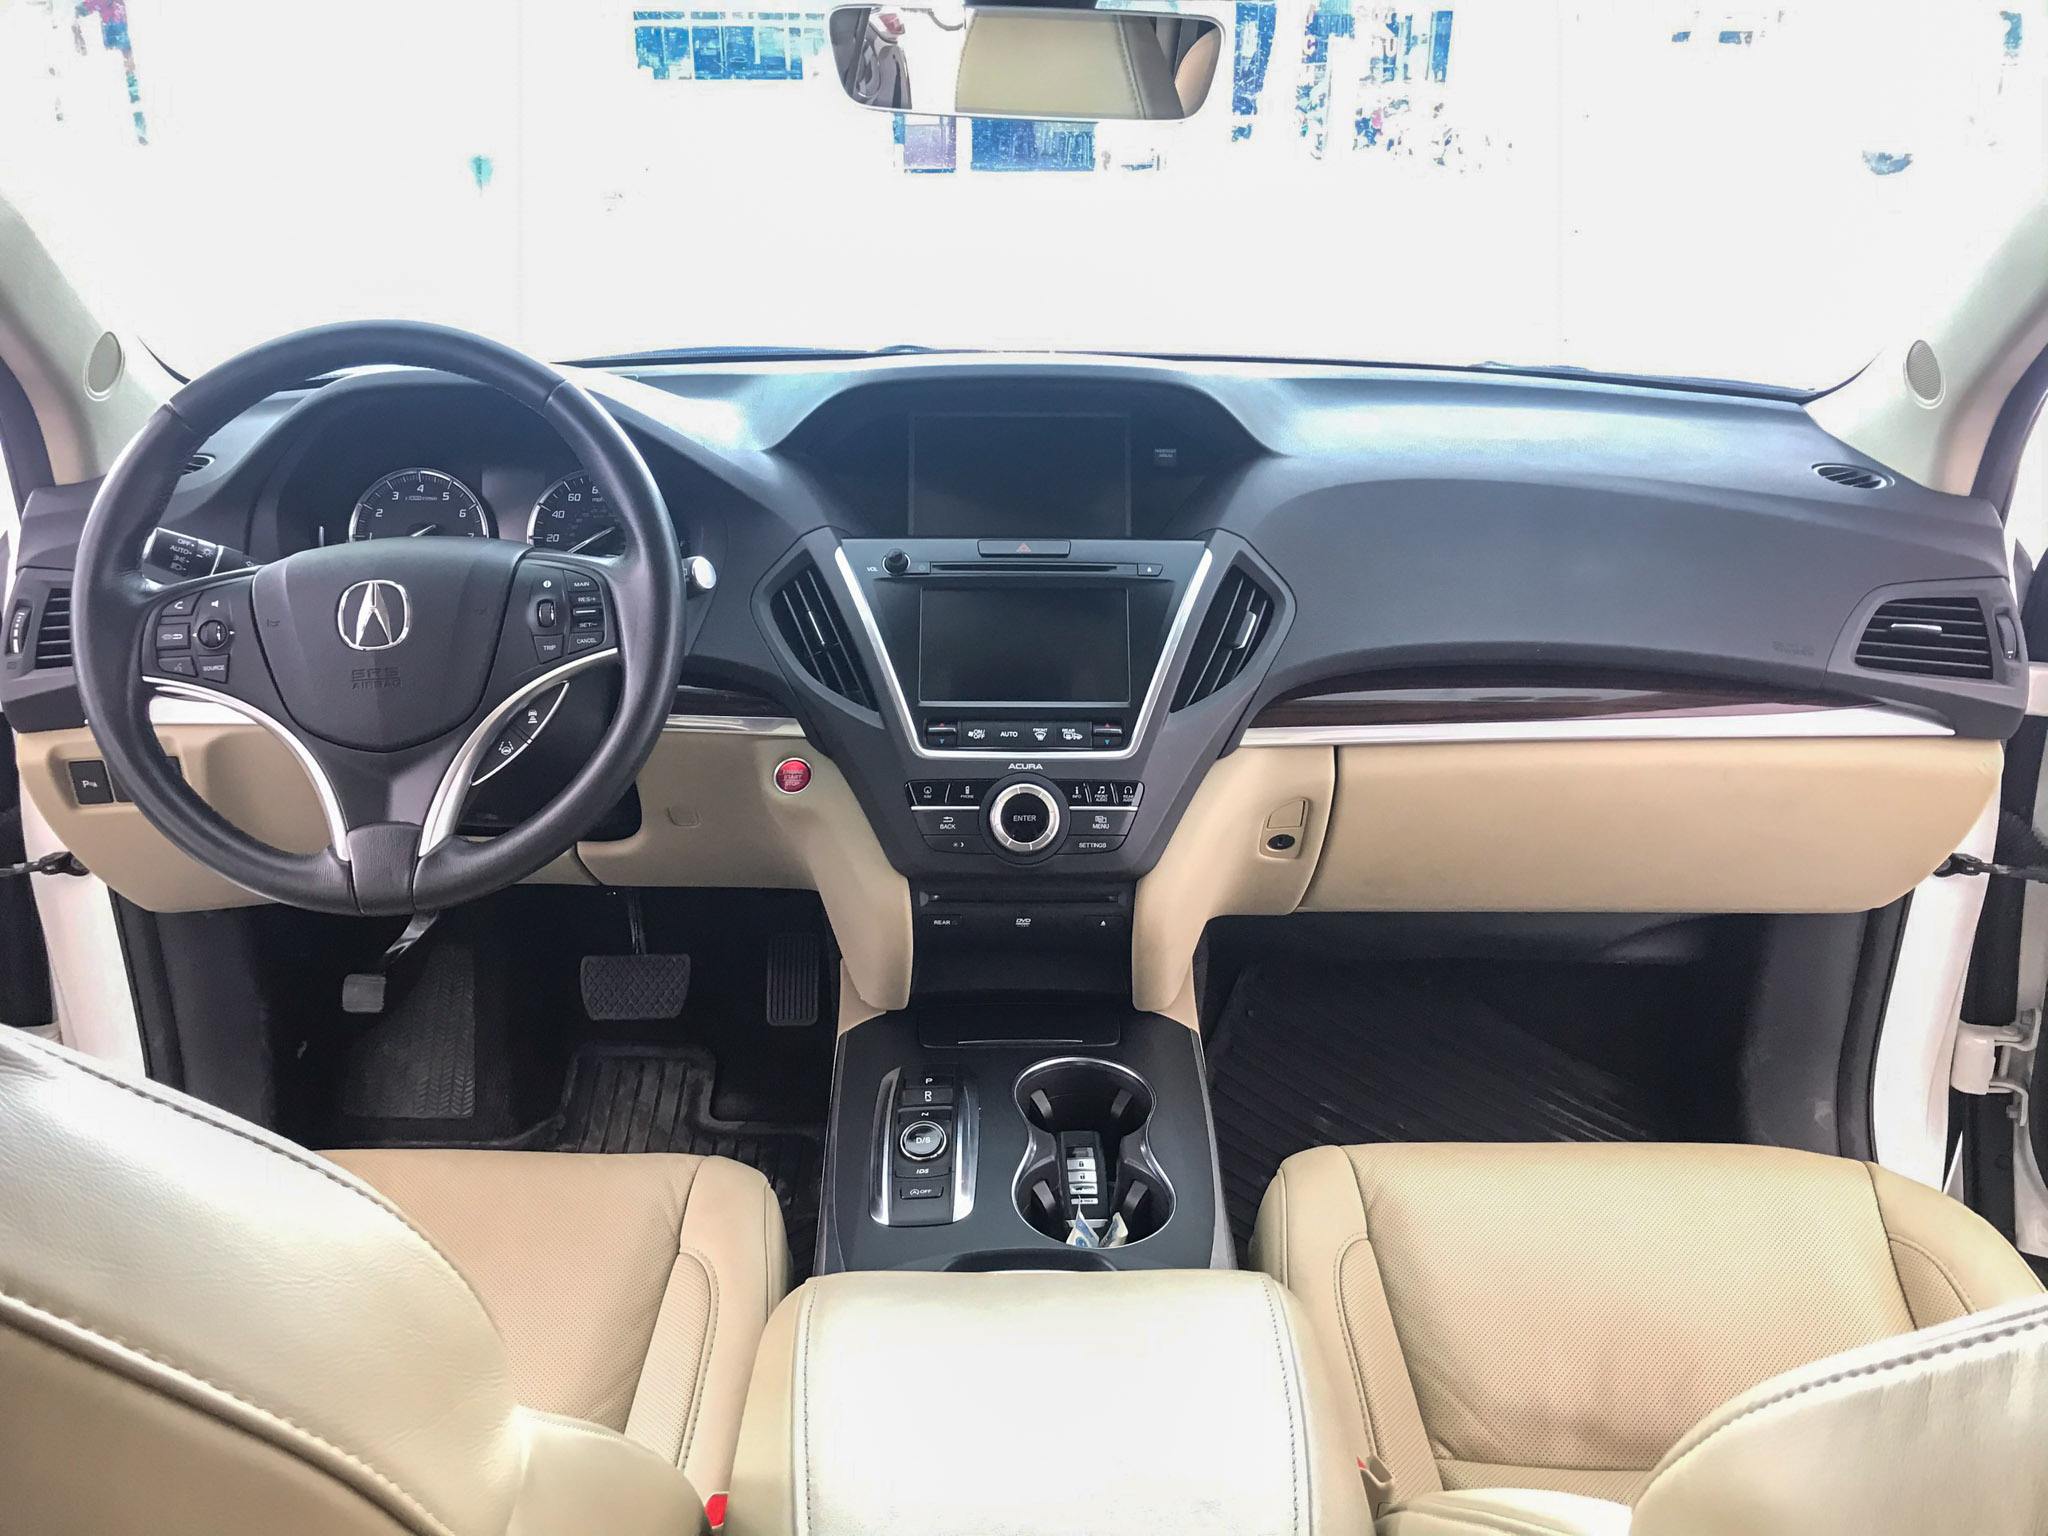 Acura MDX 2016  SUV hạng sang tầm trung ở Sài Gòn  VnExpress